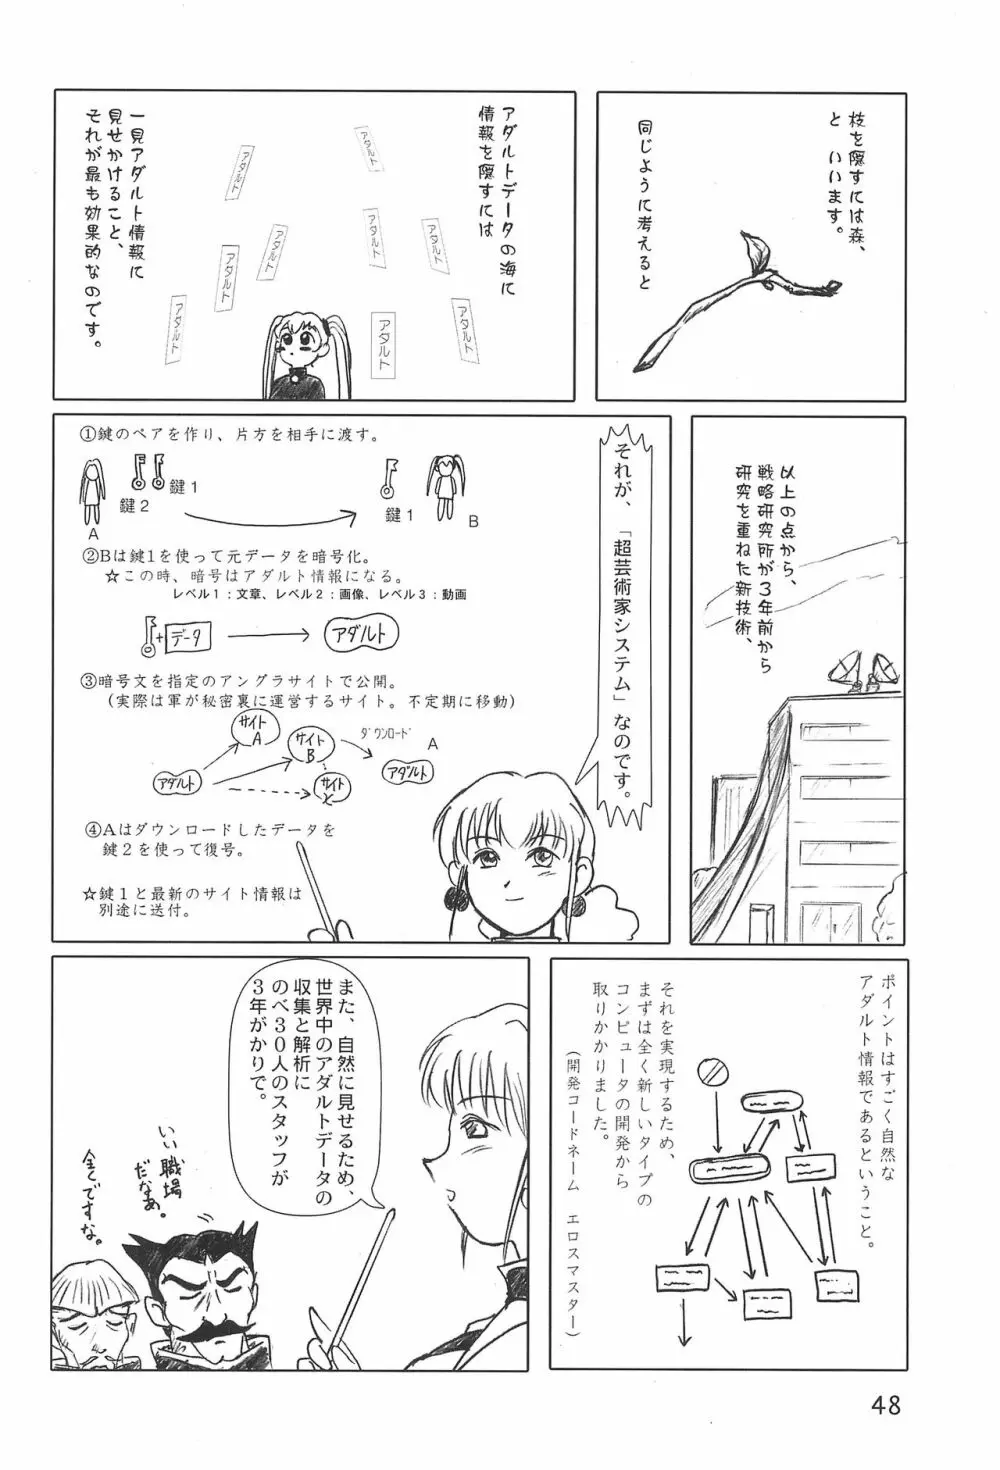 世界うきうき大図鑑2001 48ページ